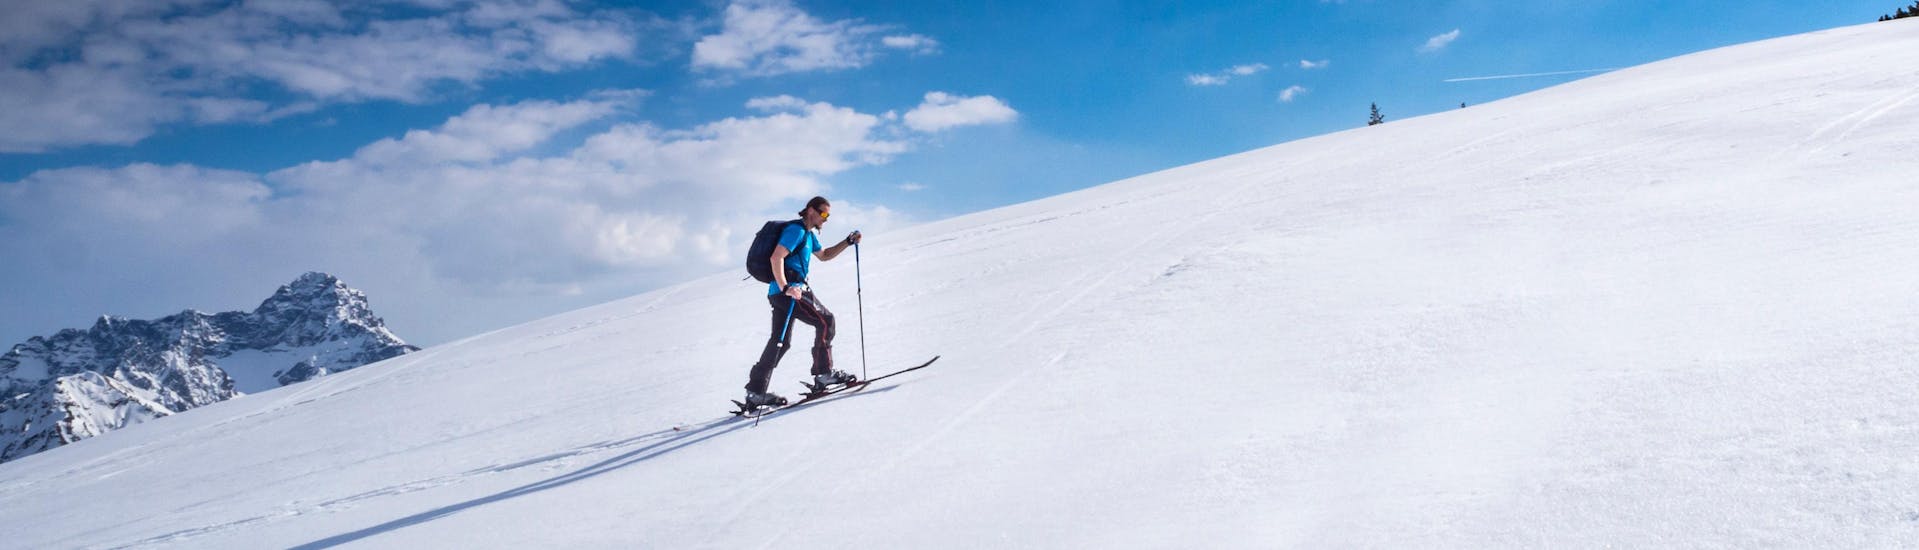 Skitourer die op een zonnige dag in Riezlern, Oostenrijk, de helling op klimt.